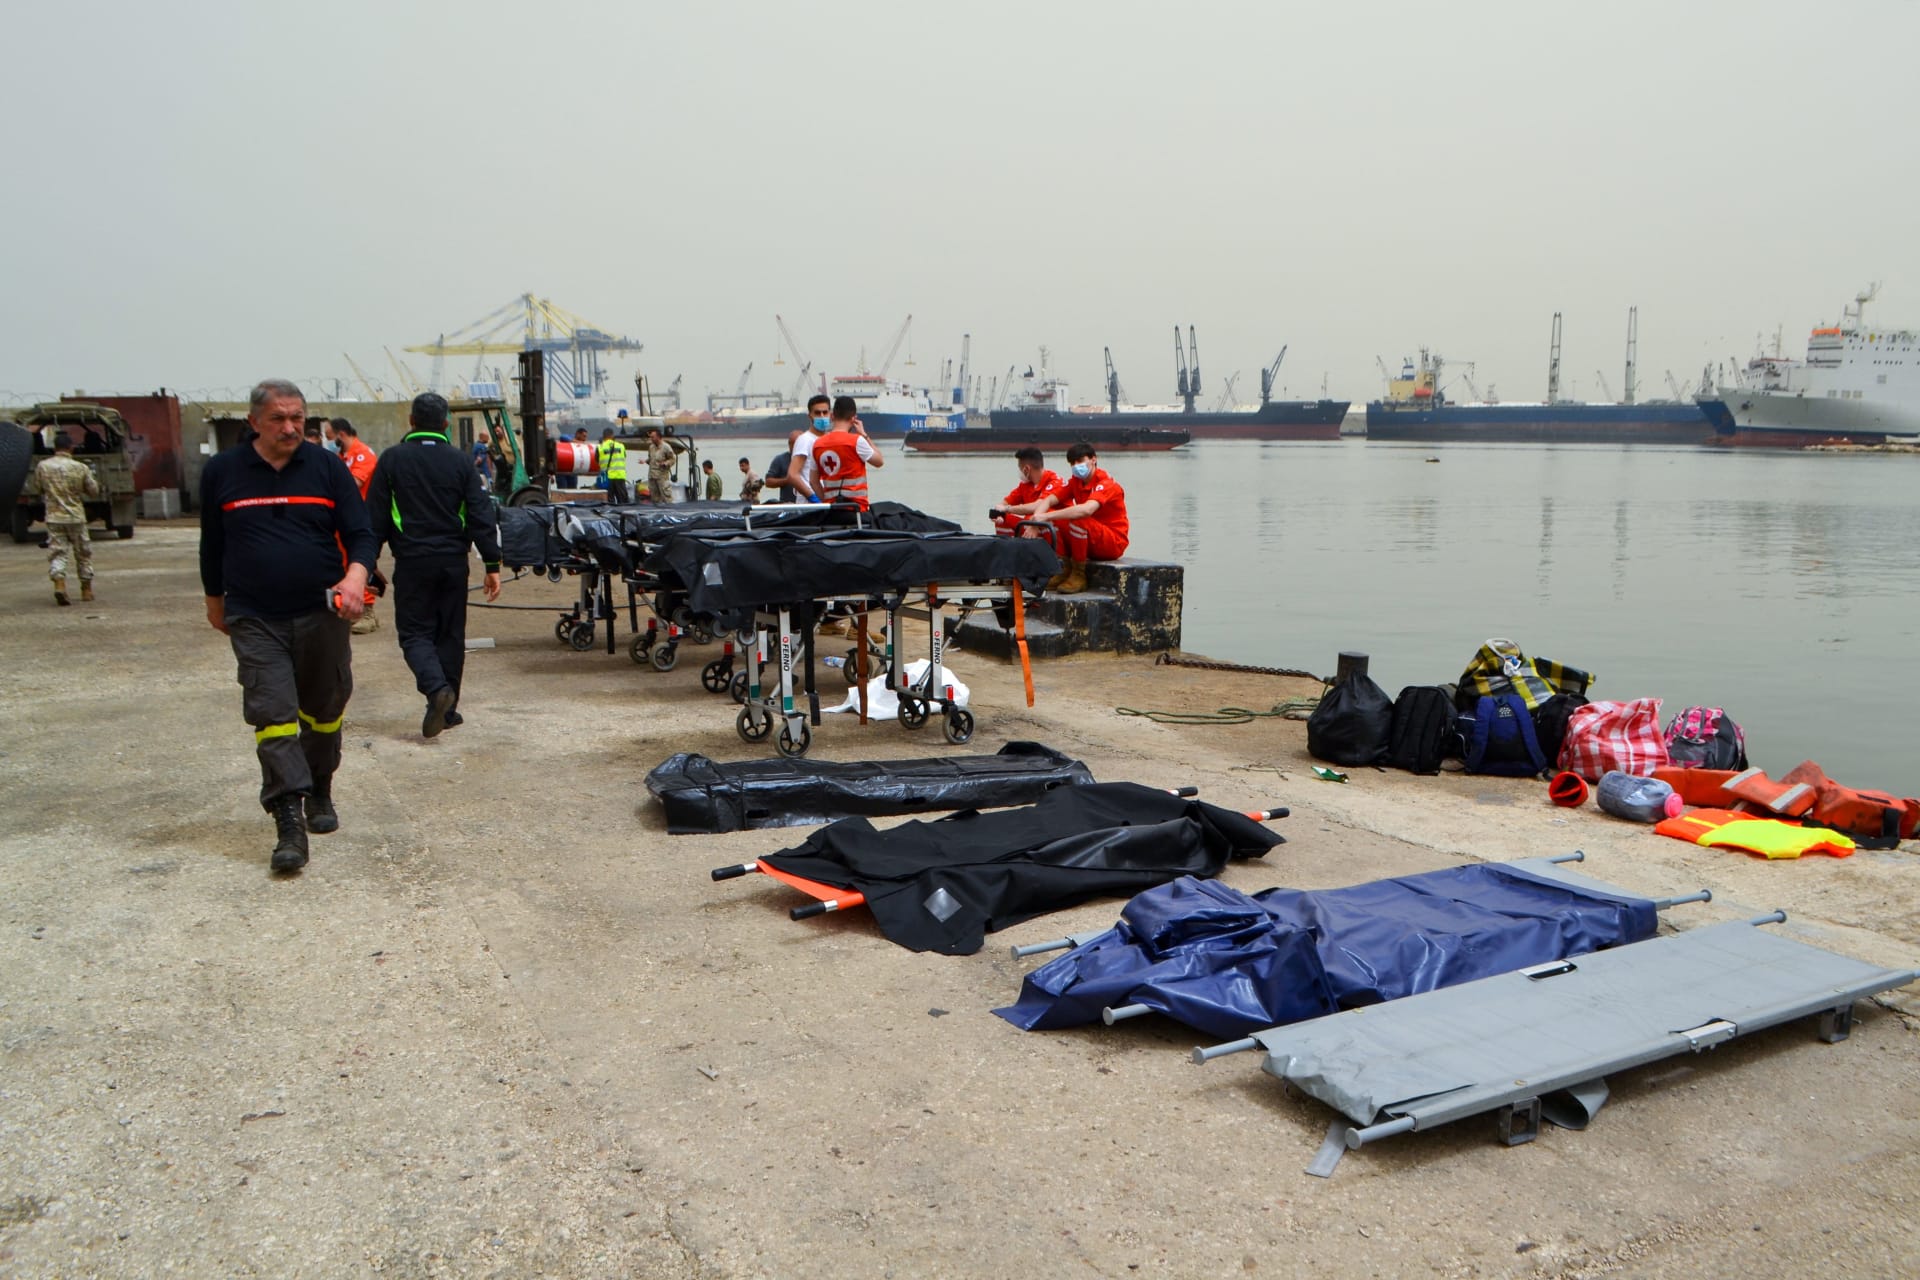 "انتظرنا الغواصة 4 أشهر" والنتيجة.. لم تننشل الجثث ولا حتى زورق الموت من المياه اللبنانية